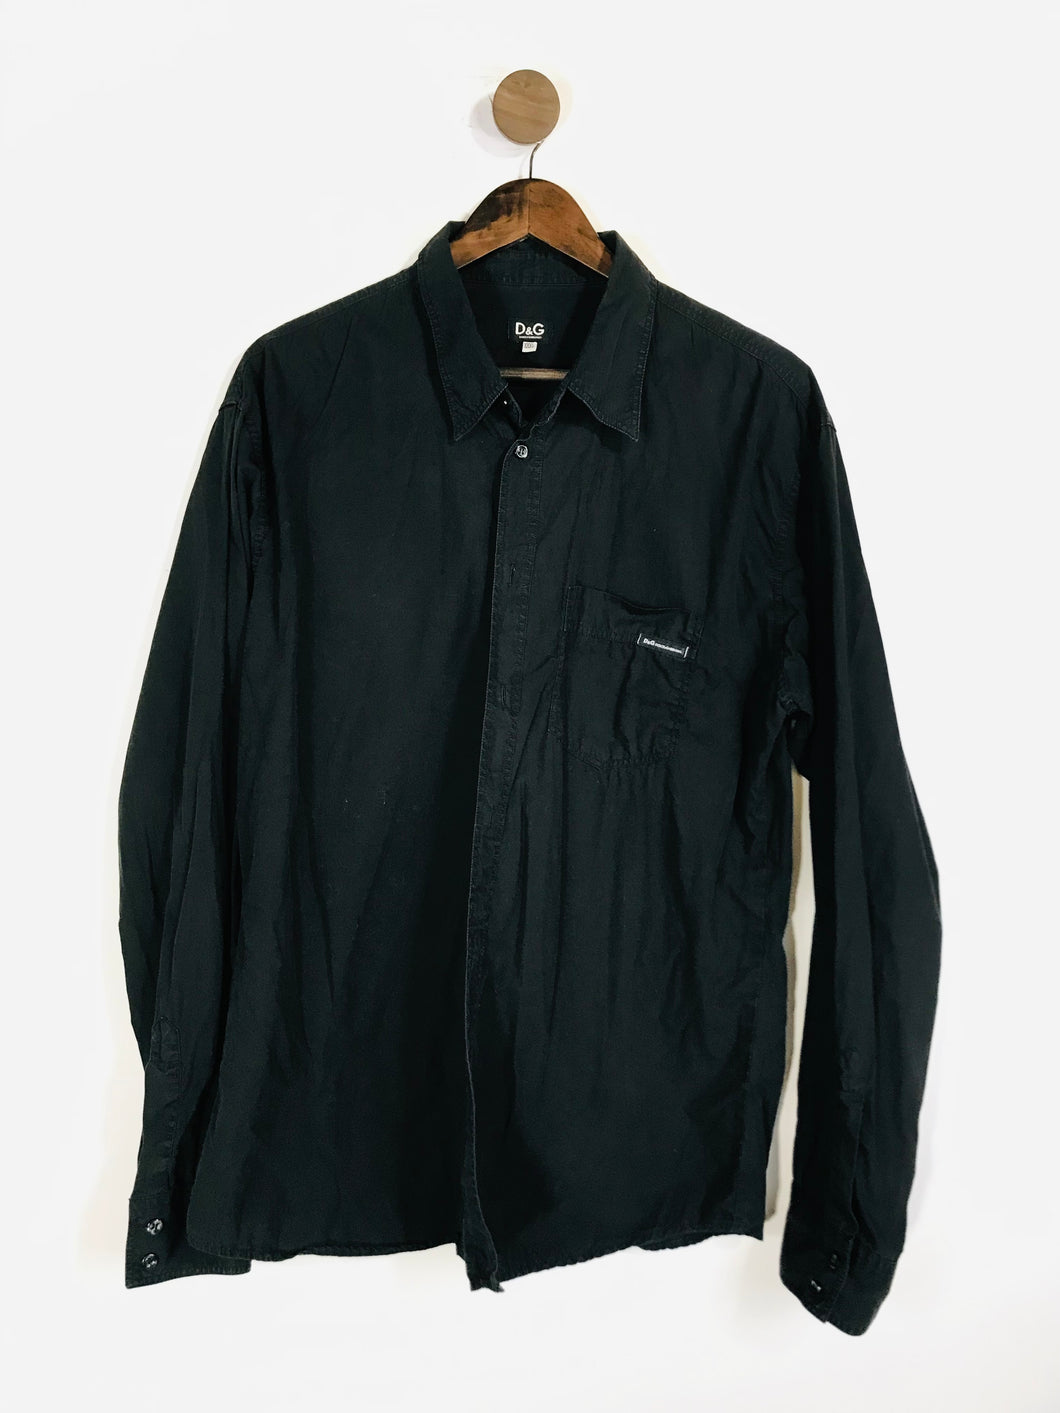 Dolce & Gabbana Men's Cotton Button-Up Shirt | XXXL | Black